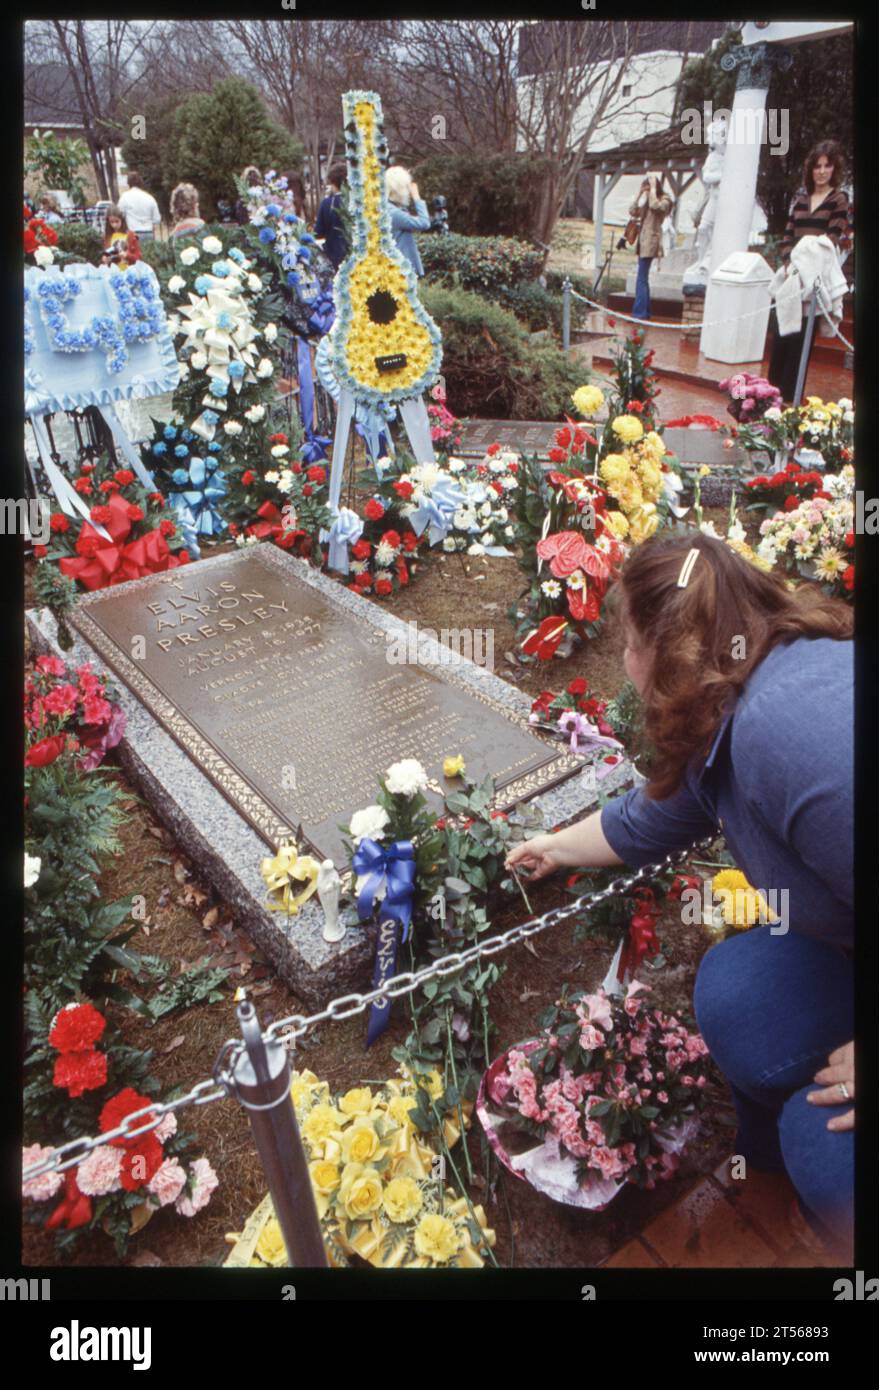 Una donna poggia dei fiori sulla lapide di Elvis al suo primo compleanno dopo la sua morte. A Graceland, residenza di Elvis a Memphis, l'8 gennaio 1978 in un giorno di drizzly. Foto Stock